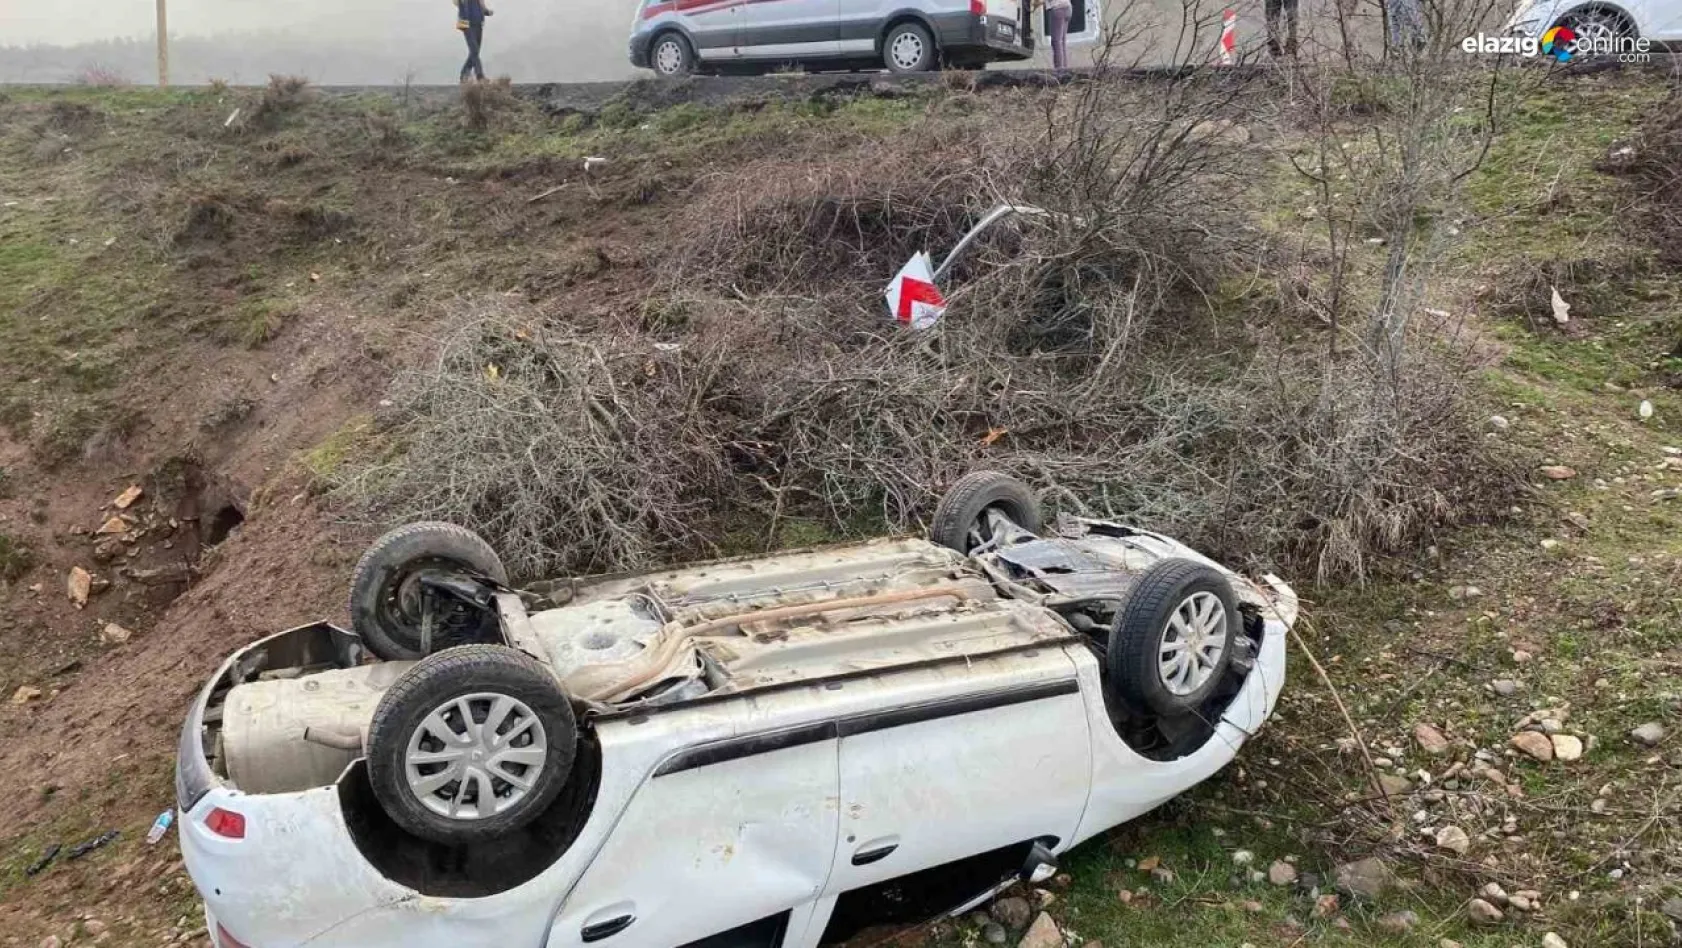 Tunceli'de trafik kazası: 3 yaralı